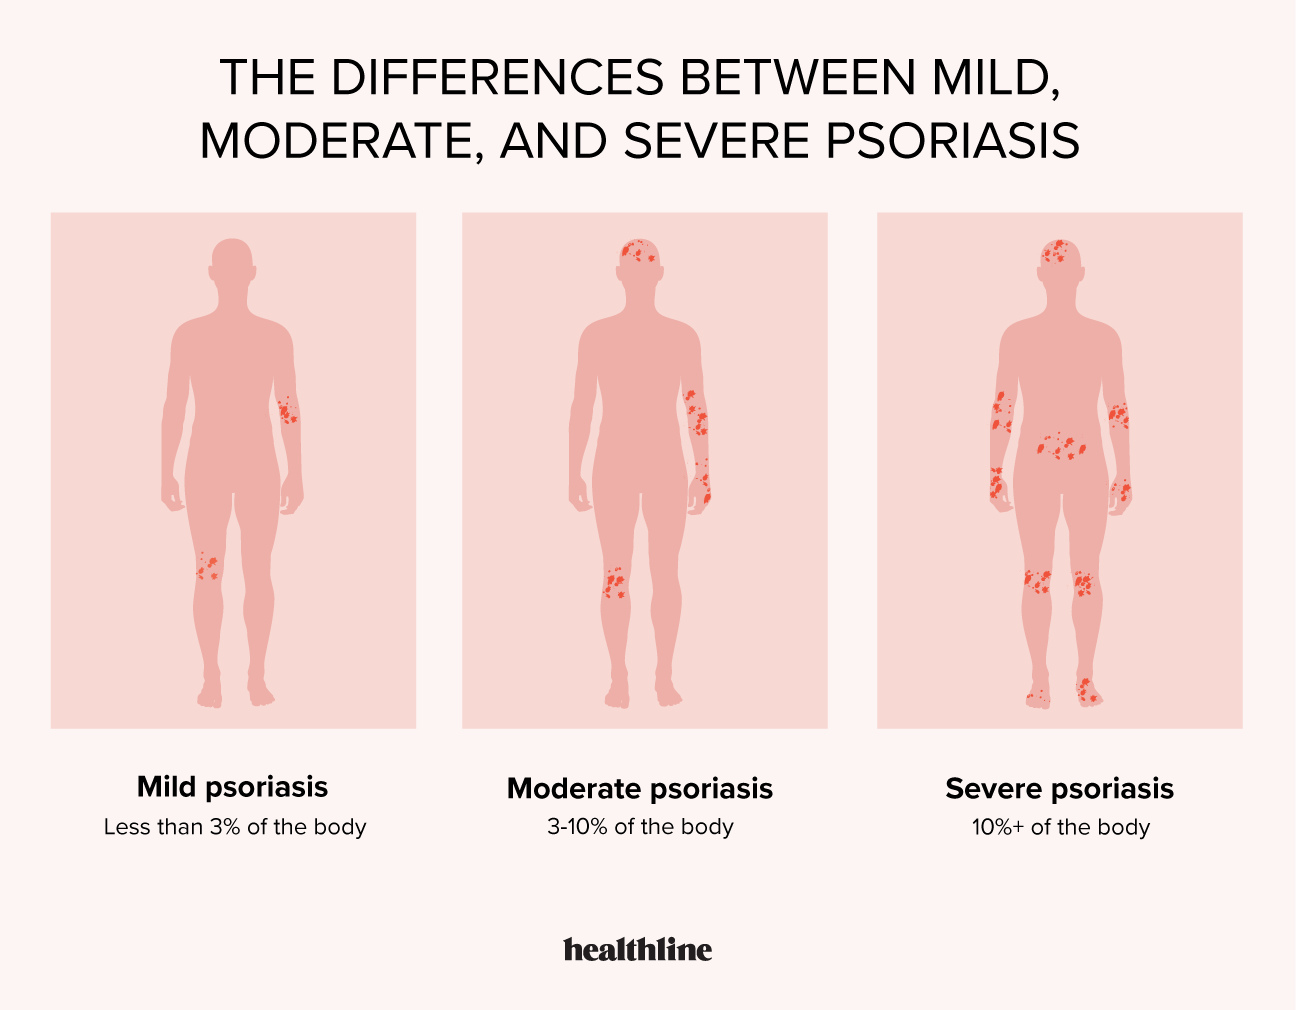 mild psoriasis